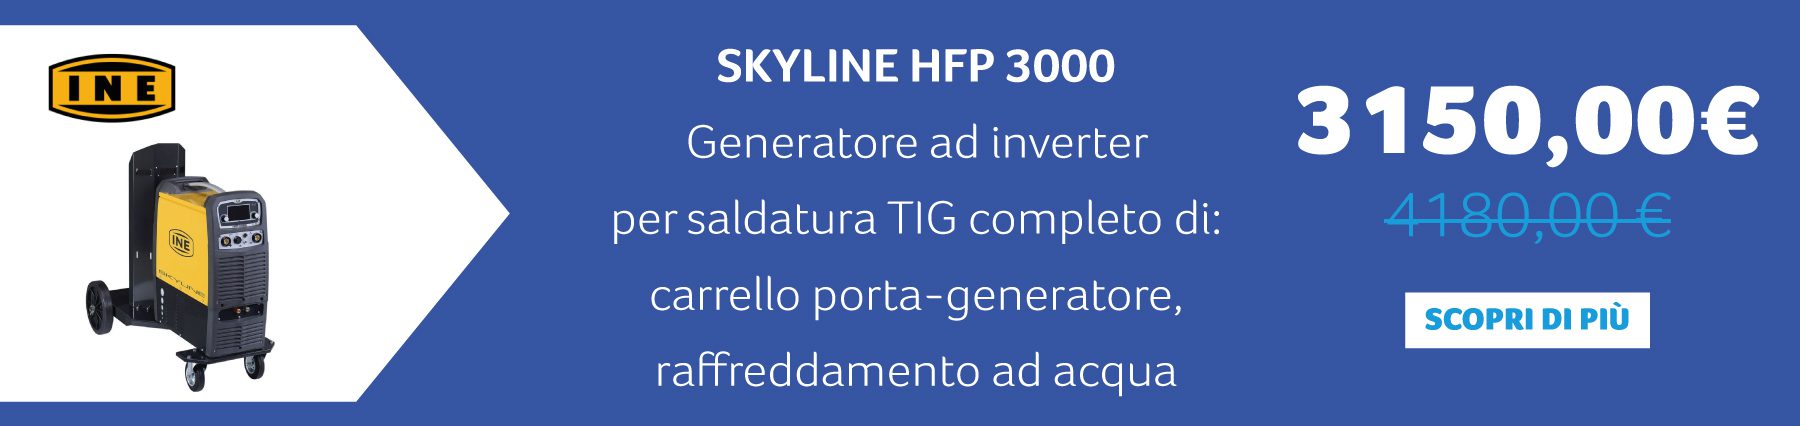 INE - SKYLINE HFP 3000 